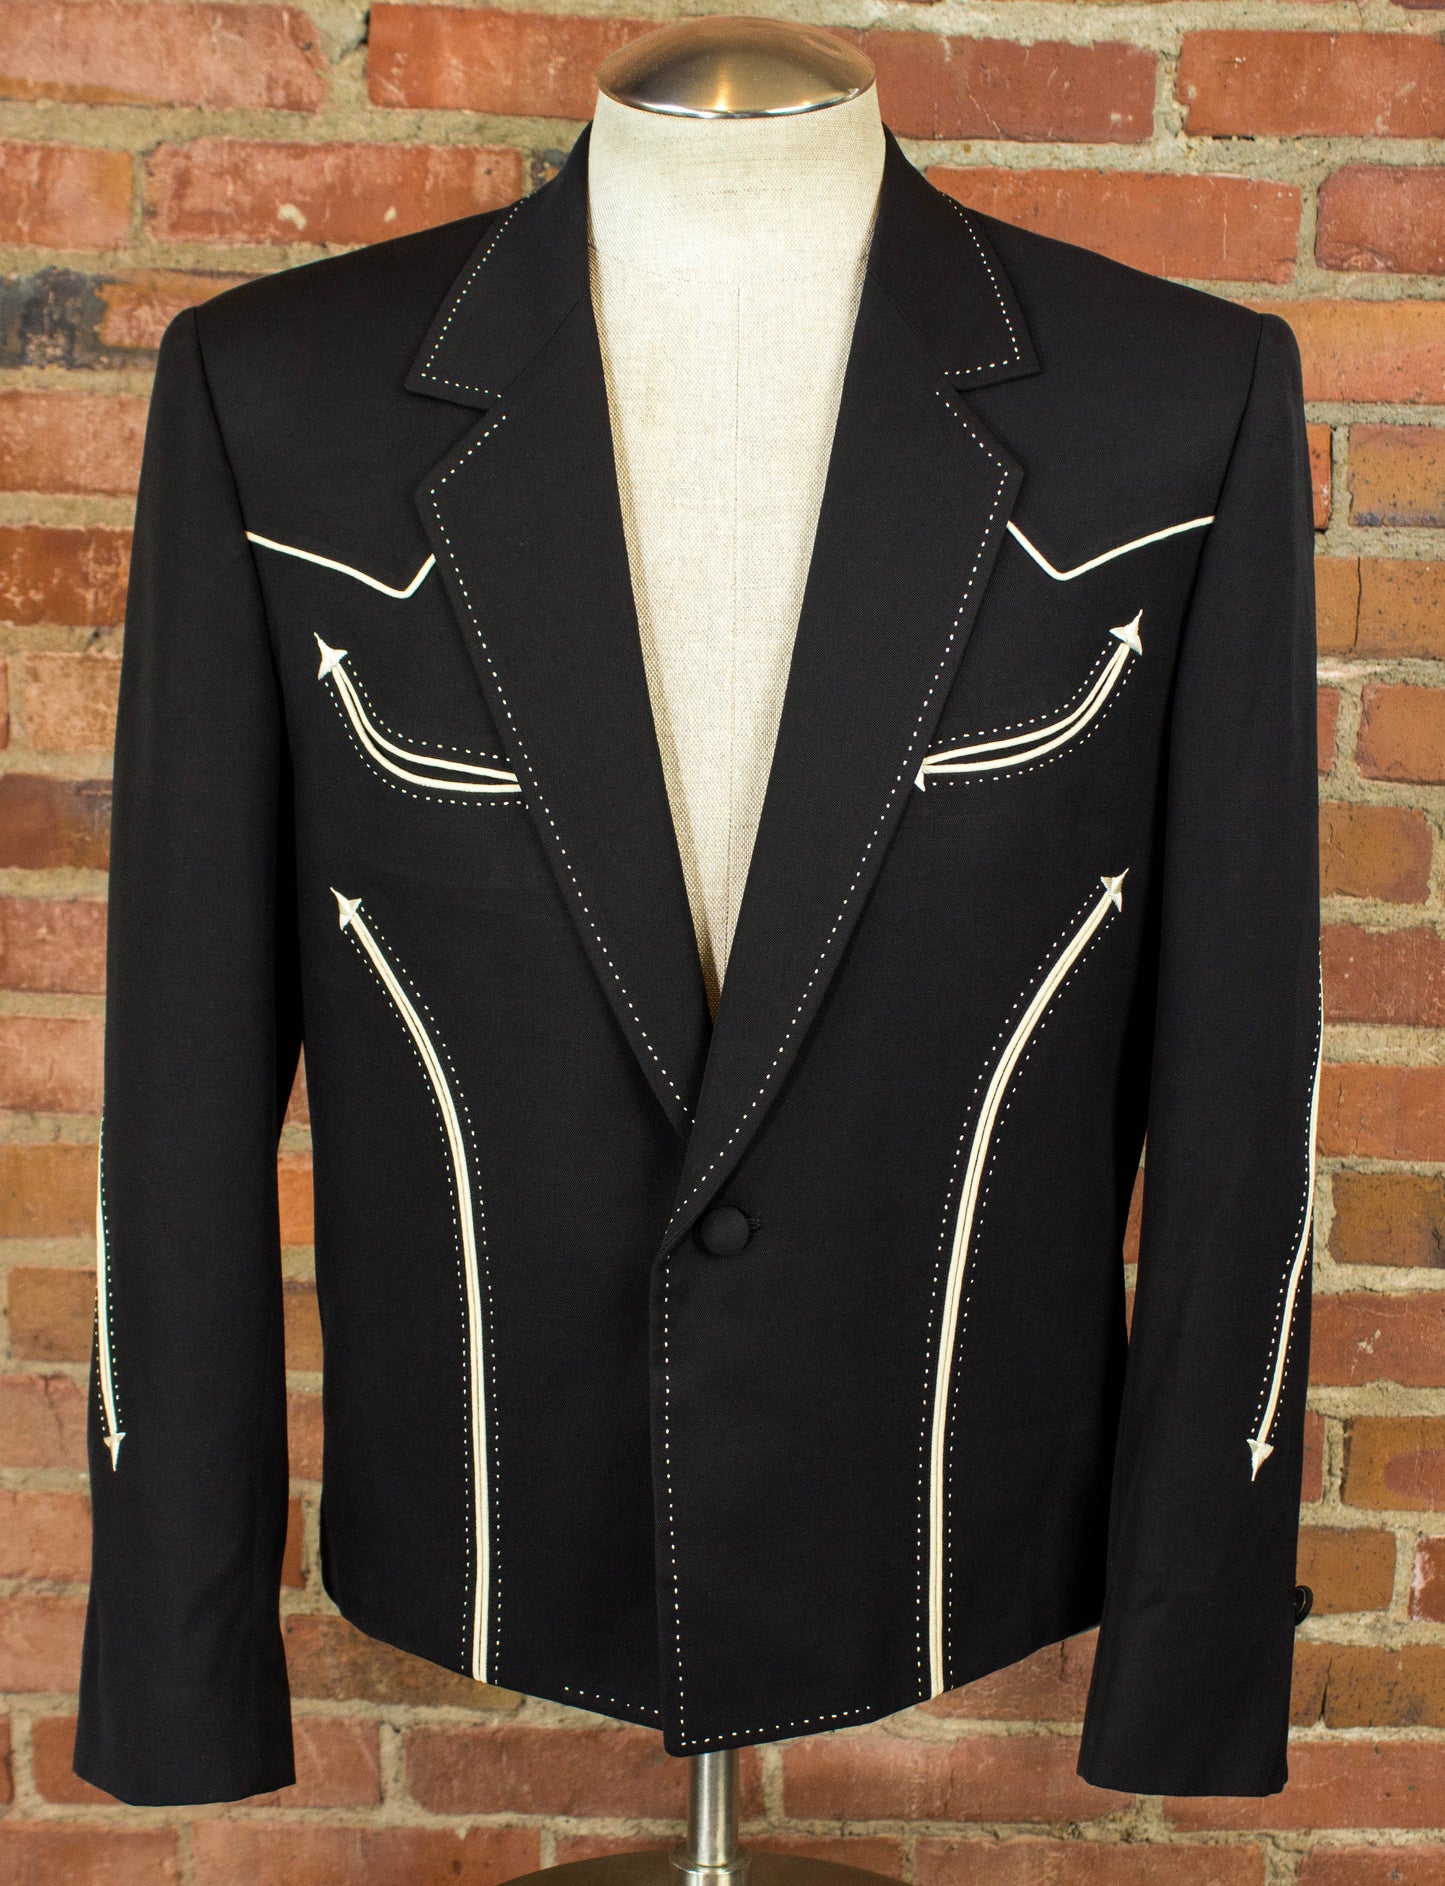 Vintage 80s Nudie's Rodeo Tailors Black Western Blazer Jacket Size 40